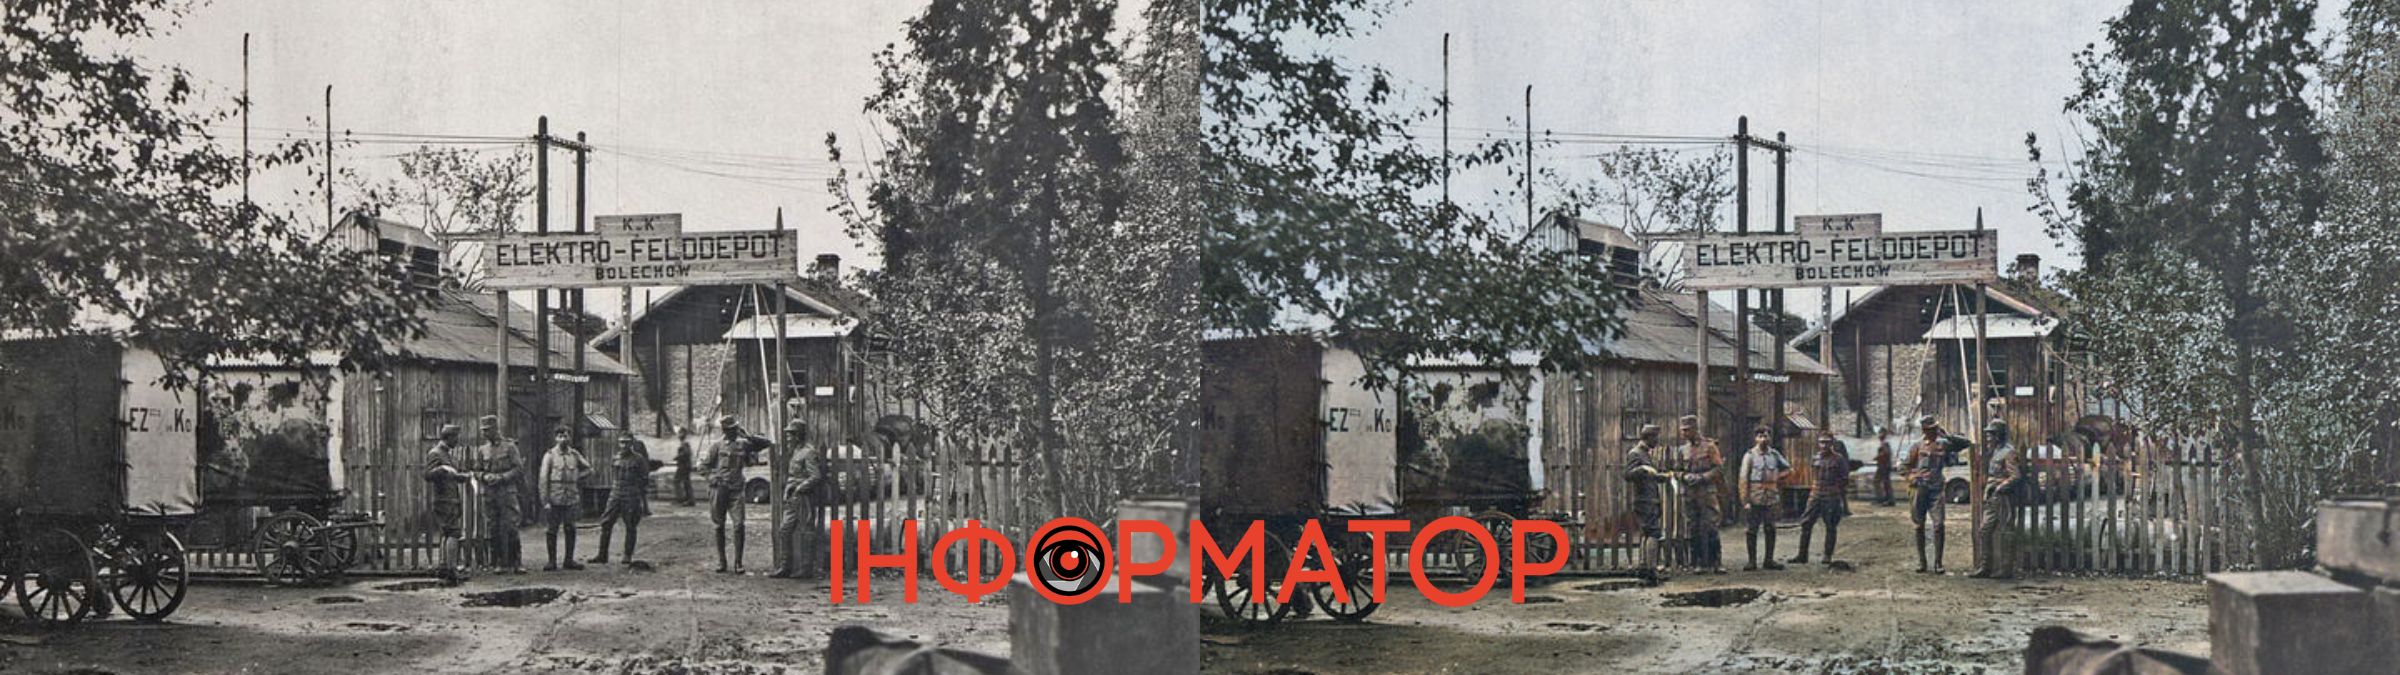 Історія Калущини в кольорі: чорно-білі знімки міста у яскравому забарвленні | №10